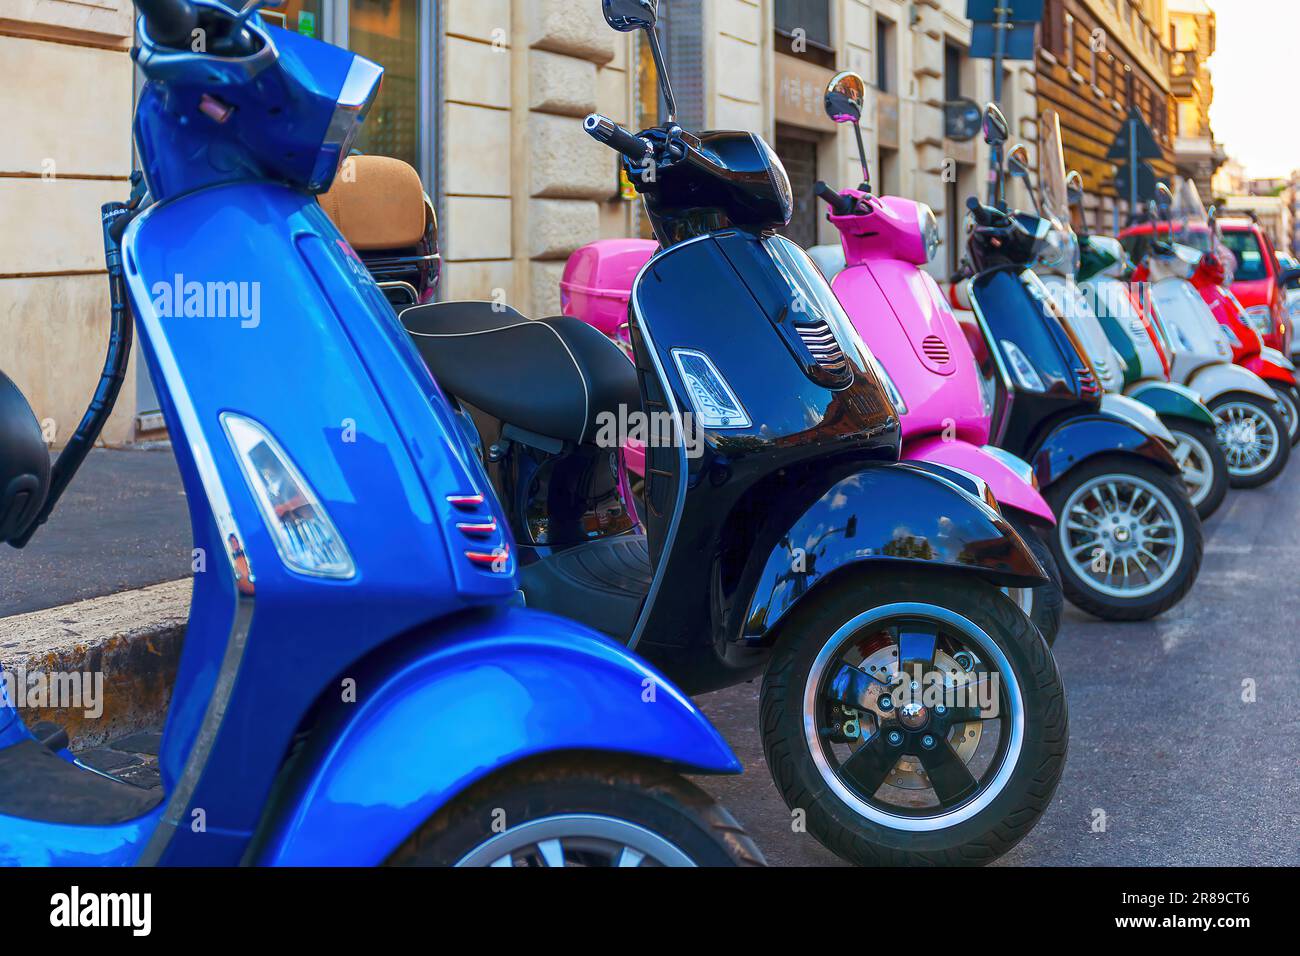 Una serie di scooter Vespa multicolore parcheggiati in fila lungo la strada, noleggio scooter in città. Foto Stock